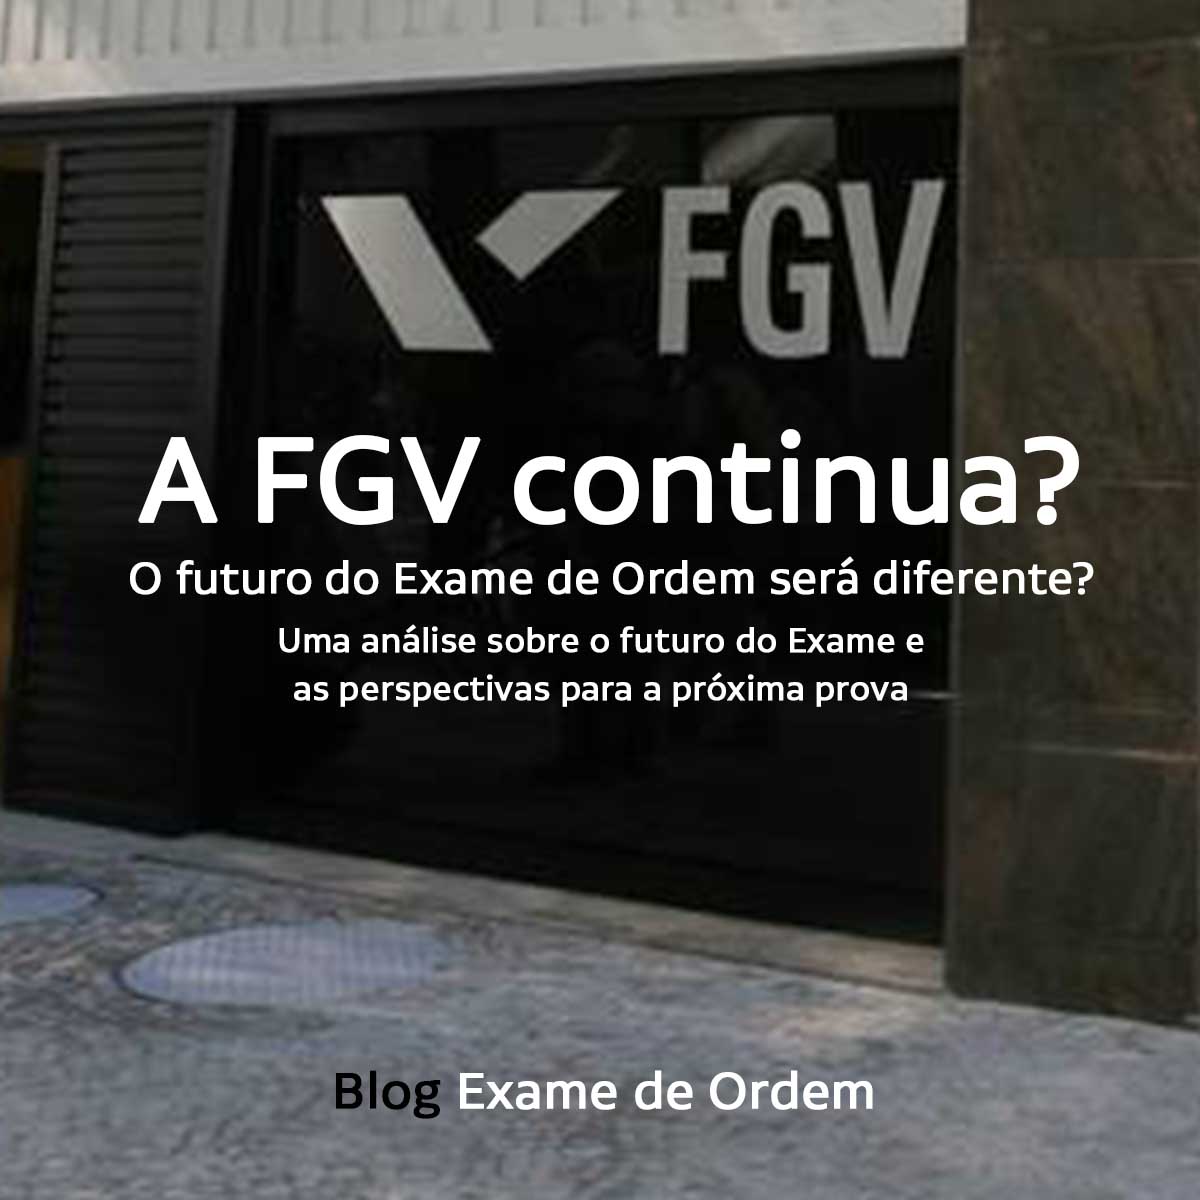 A FGV continua? O futuro do Exame de Ordem será diferente?